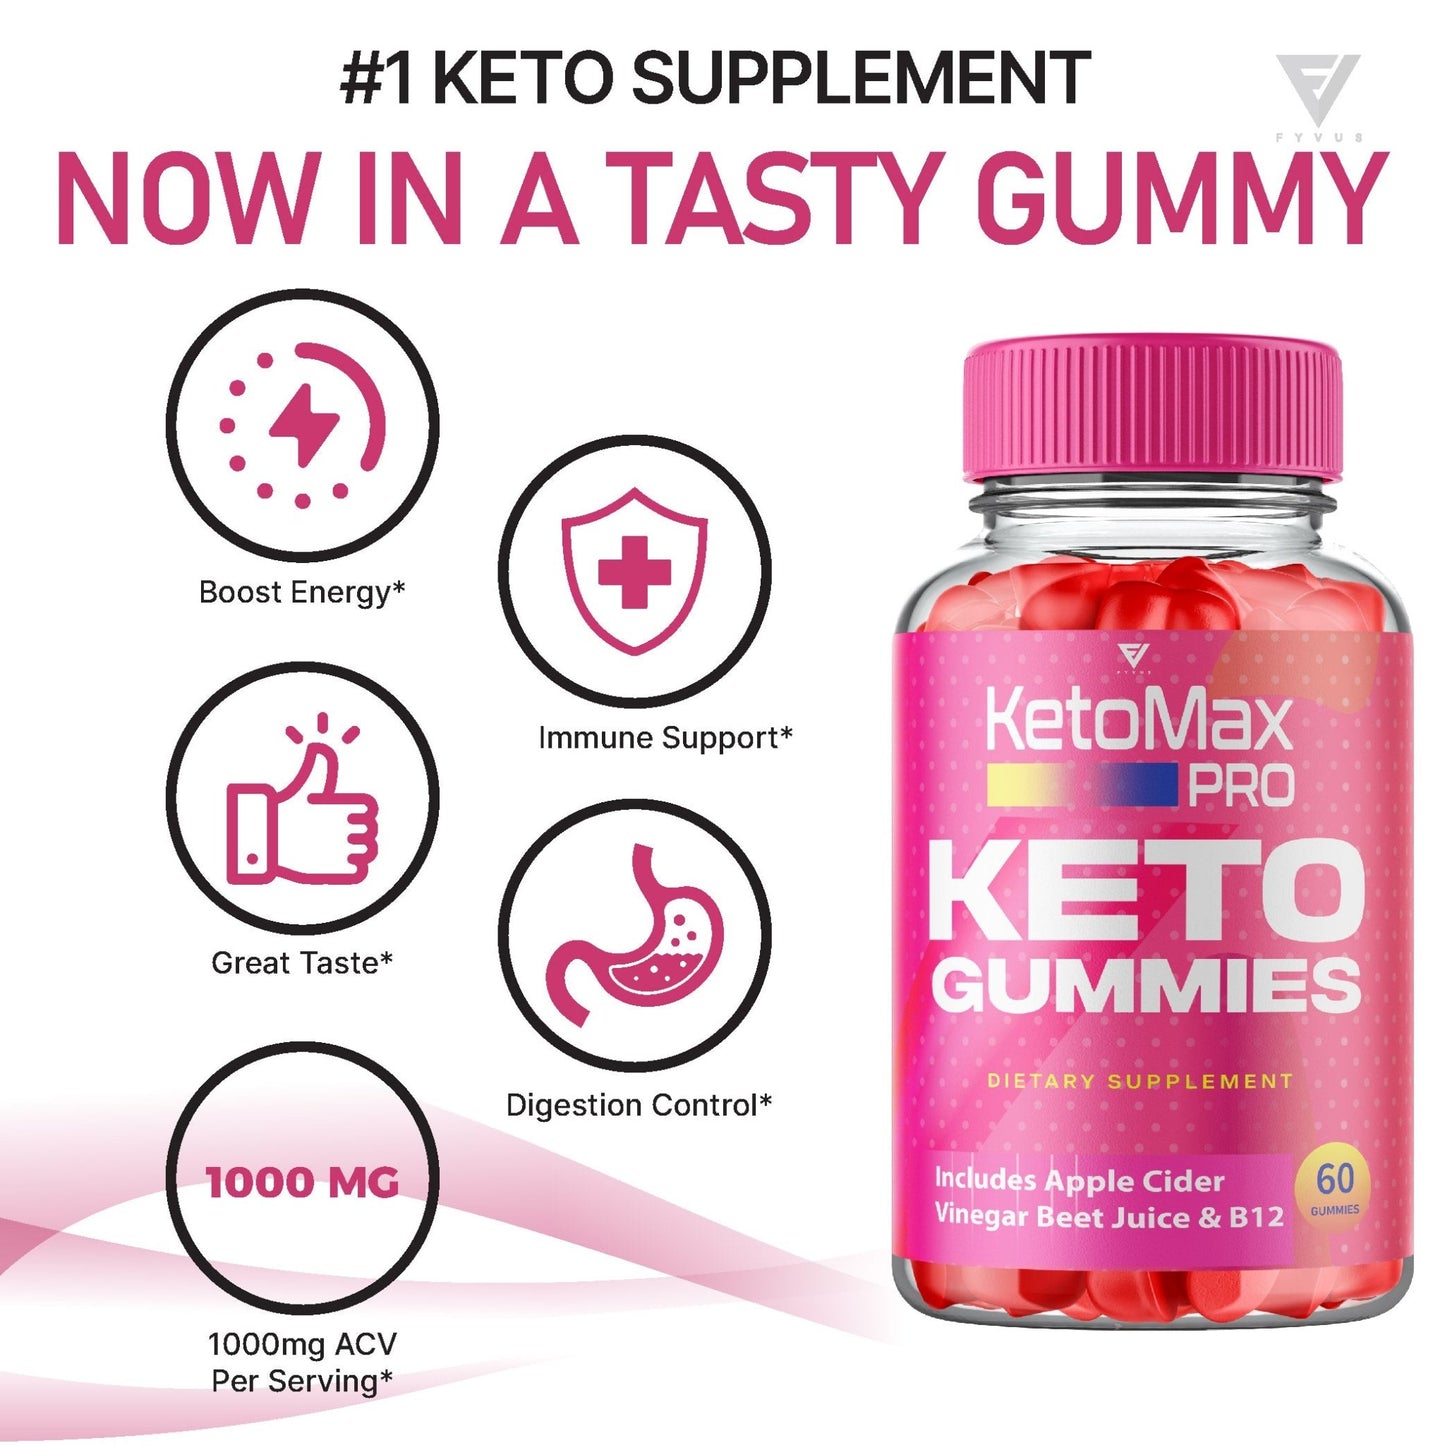 KetoMax Pro Keto Gummies - Vitamin Place